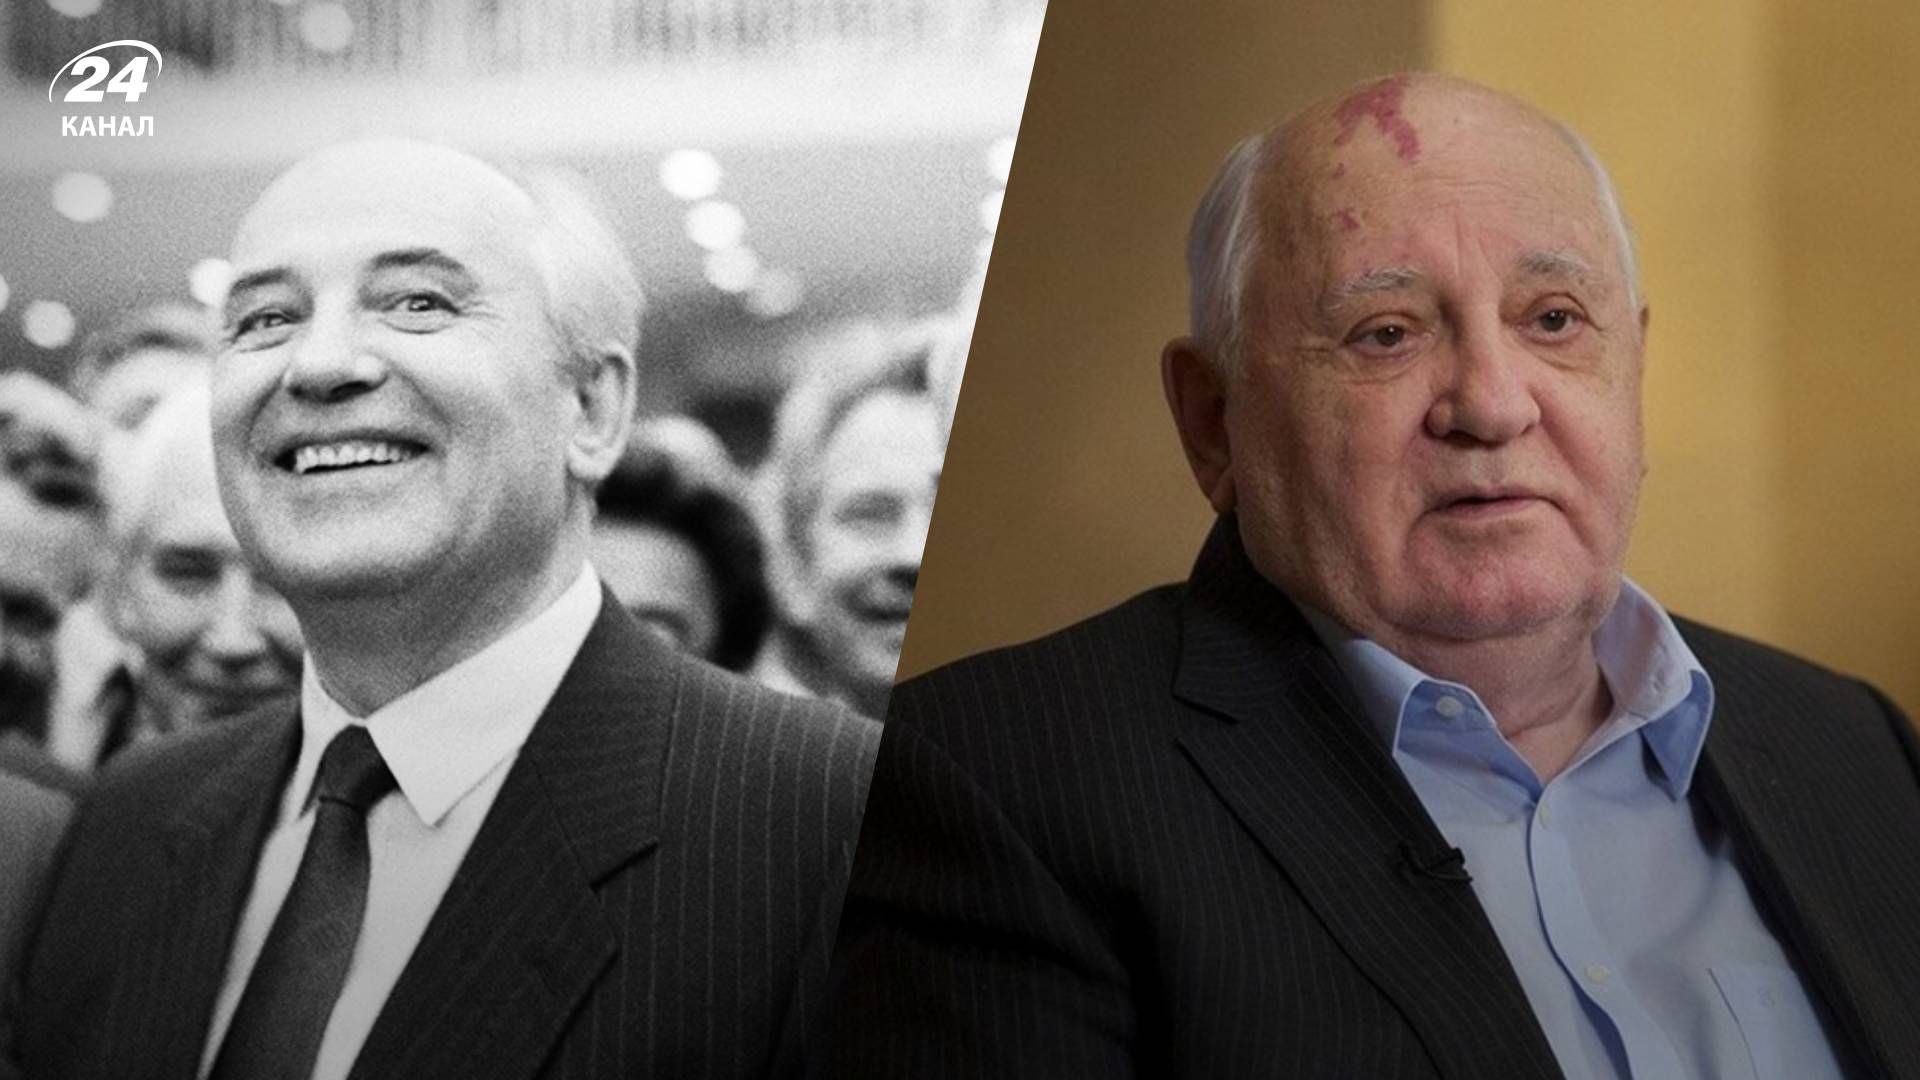 Многие люди имеют ложное представление об исторической роли Горбачева